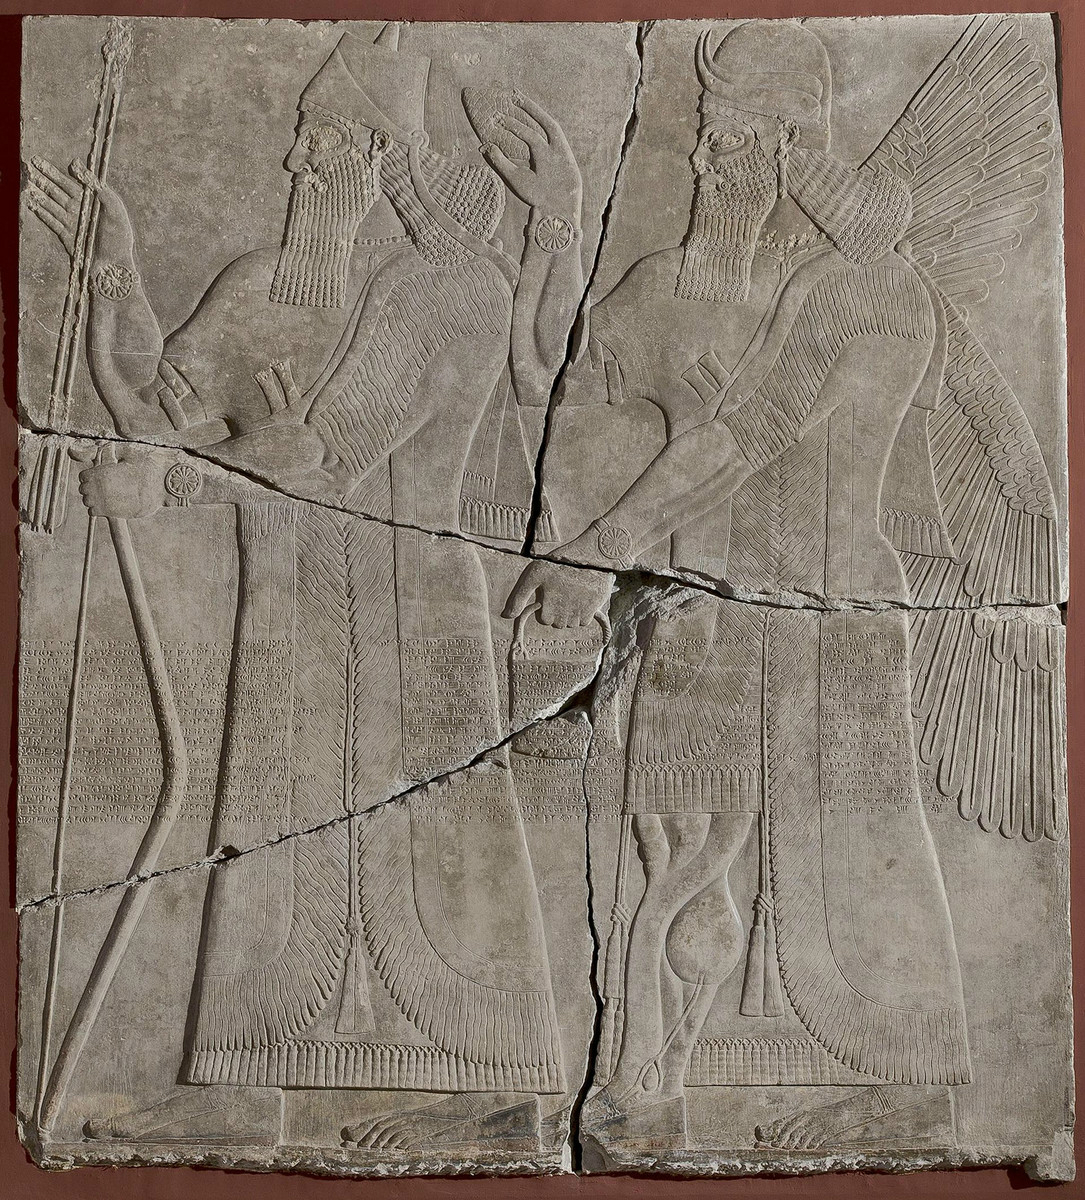 На фреске с изображением ассирийского царя нашли наручные часы из 20 века империи, всего, только, право, ученые, считают, историки, которых, наручные, фреске, изображен, Ассирийской, Ассирией, побеждать, существом, дворец, мифическим, рядом, правитель, джины